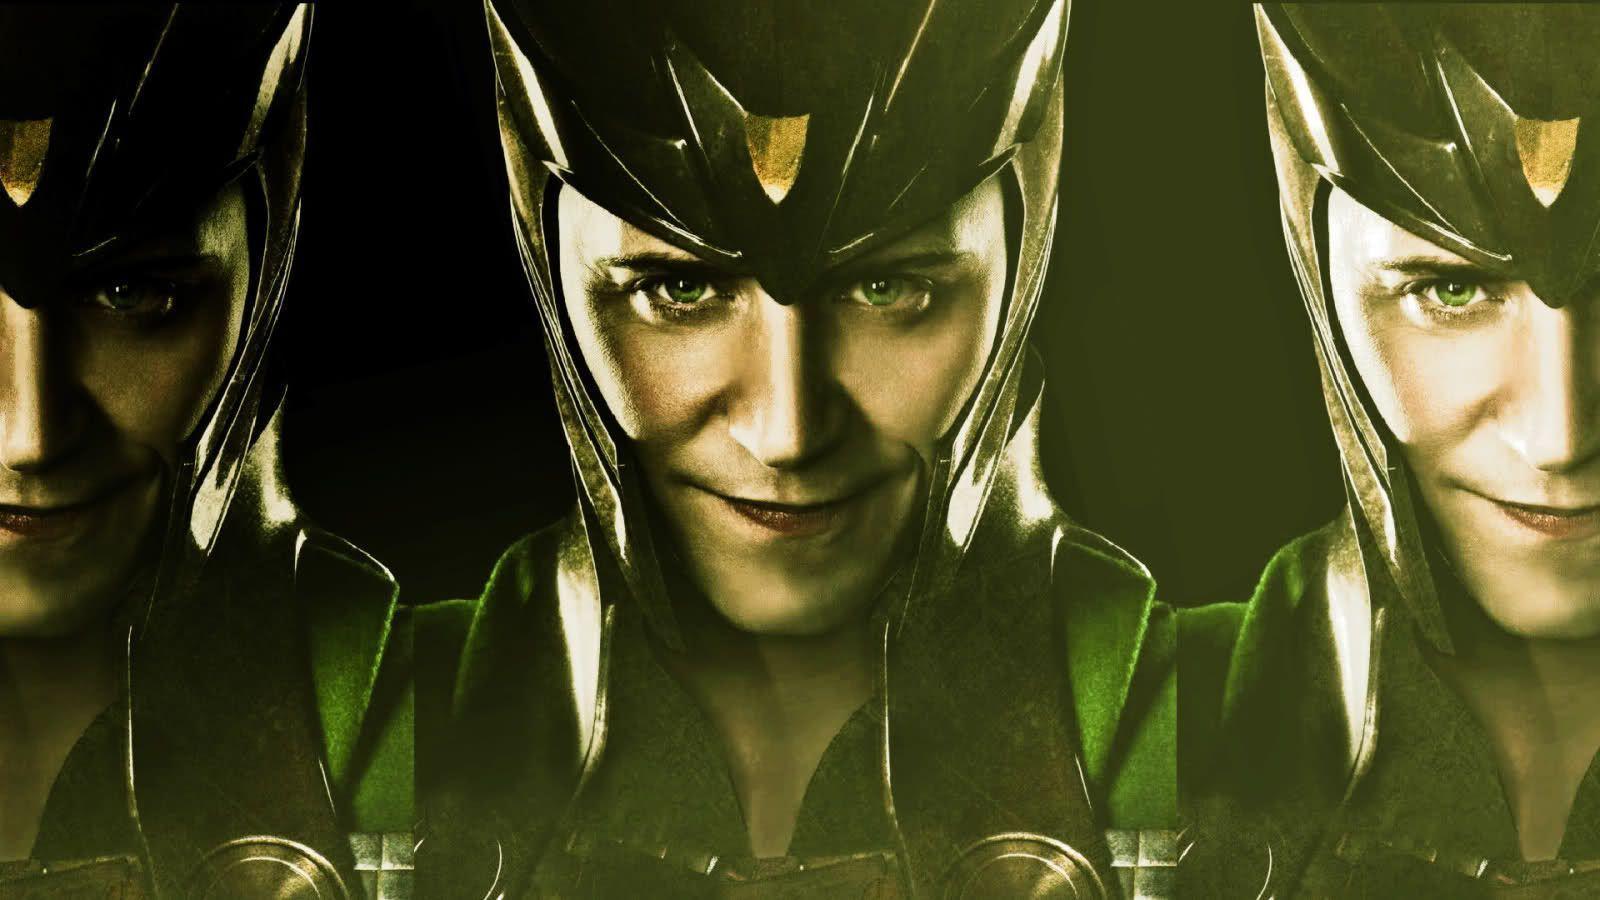 Wallpaper For > Loki Wallpaper Avengers